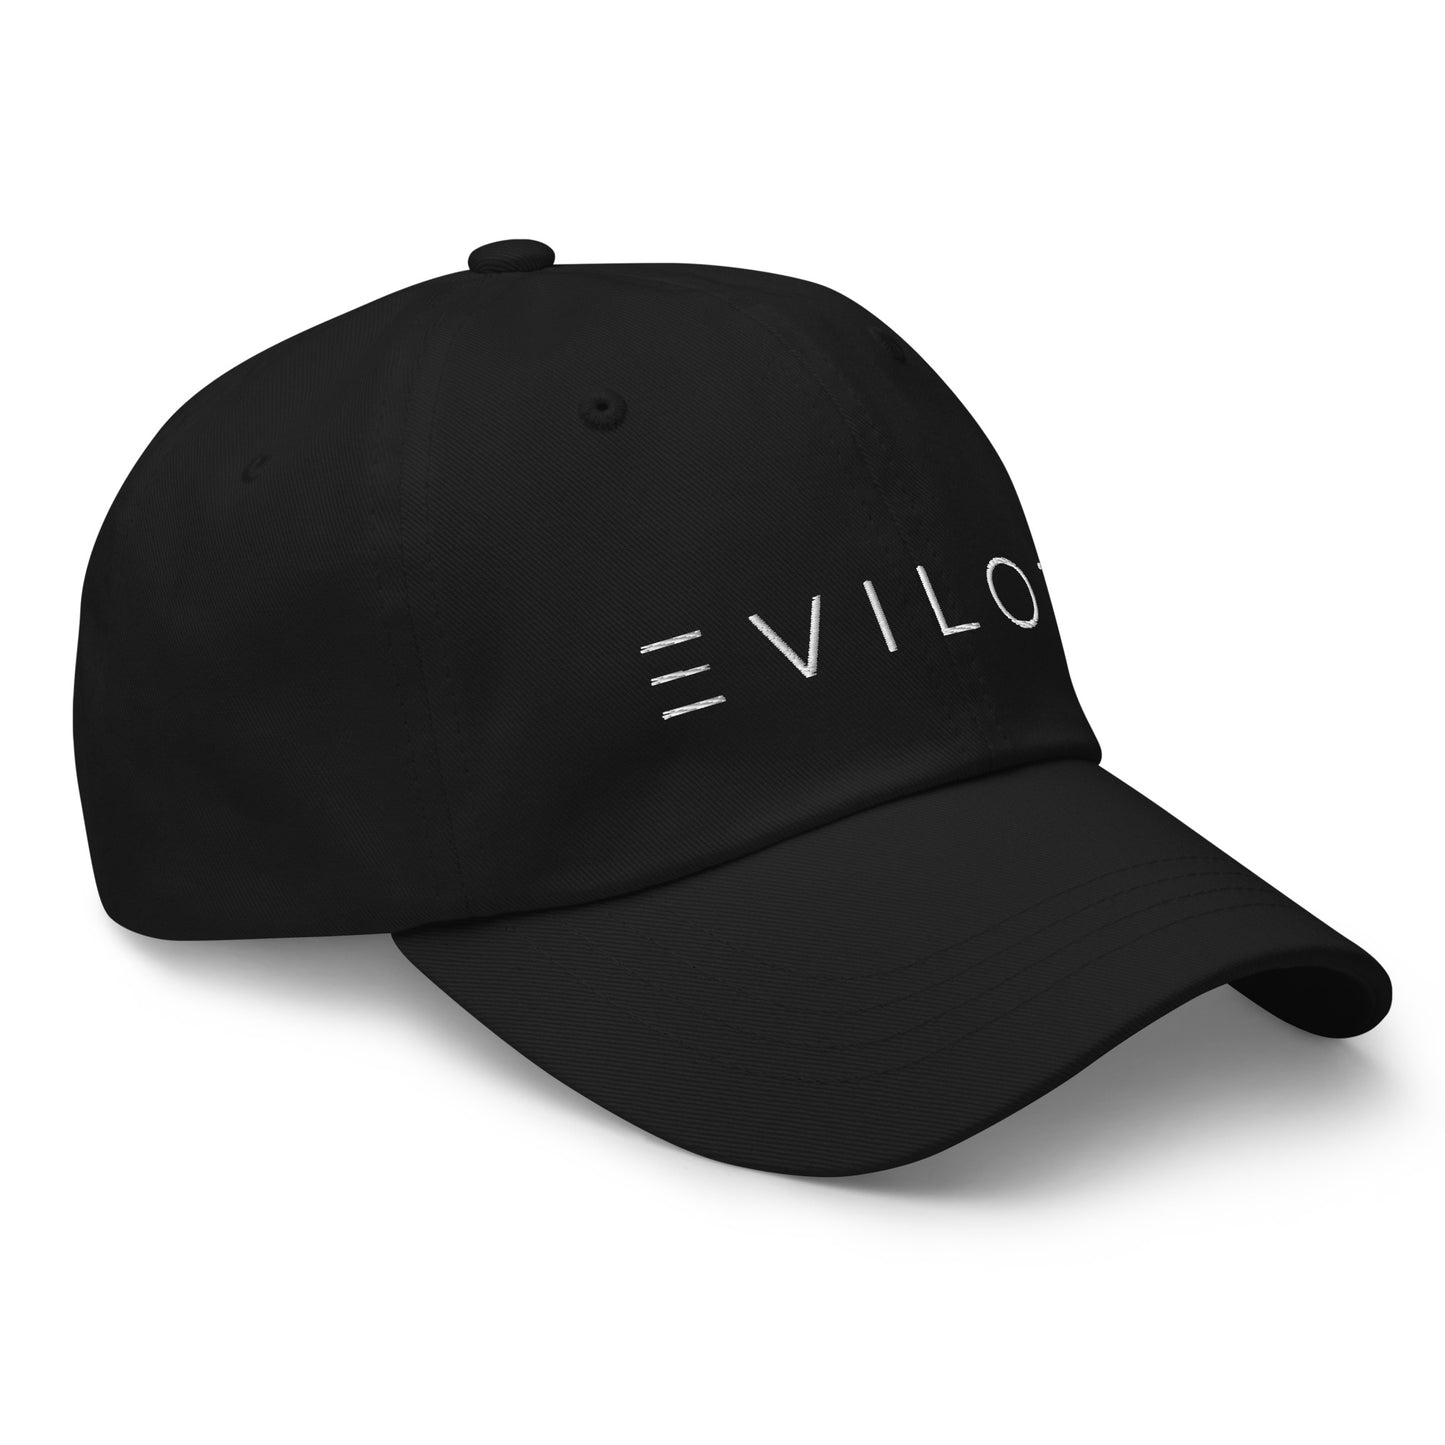 TOLIVE Hat - Black